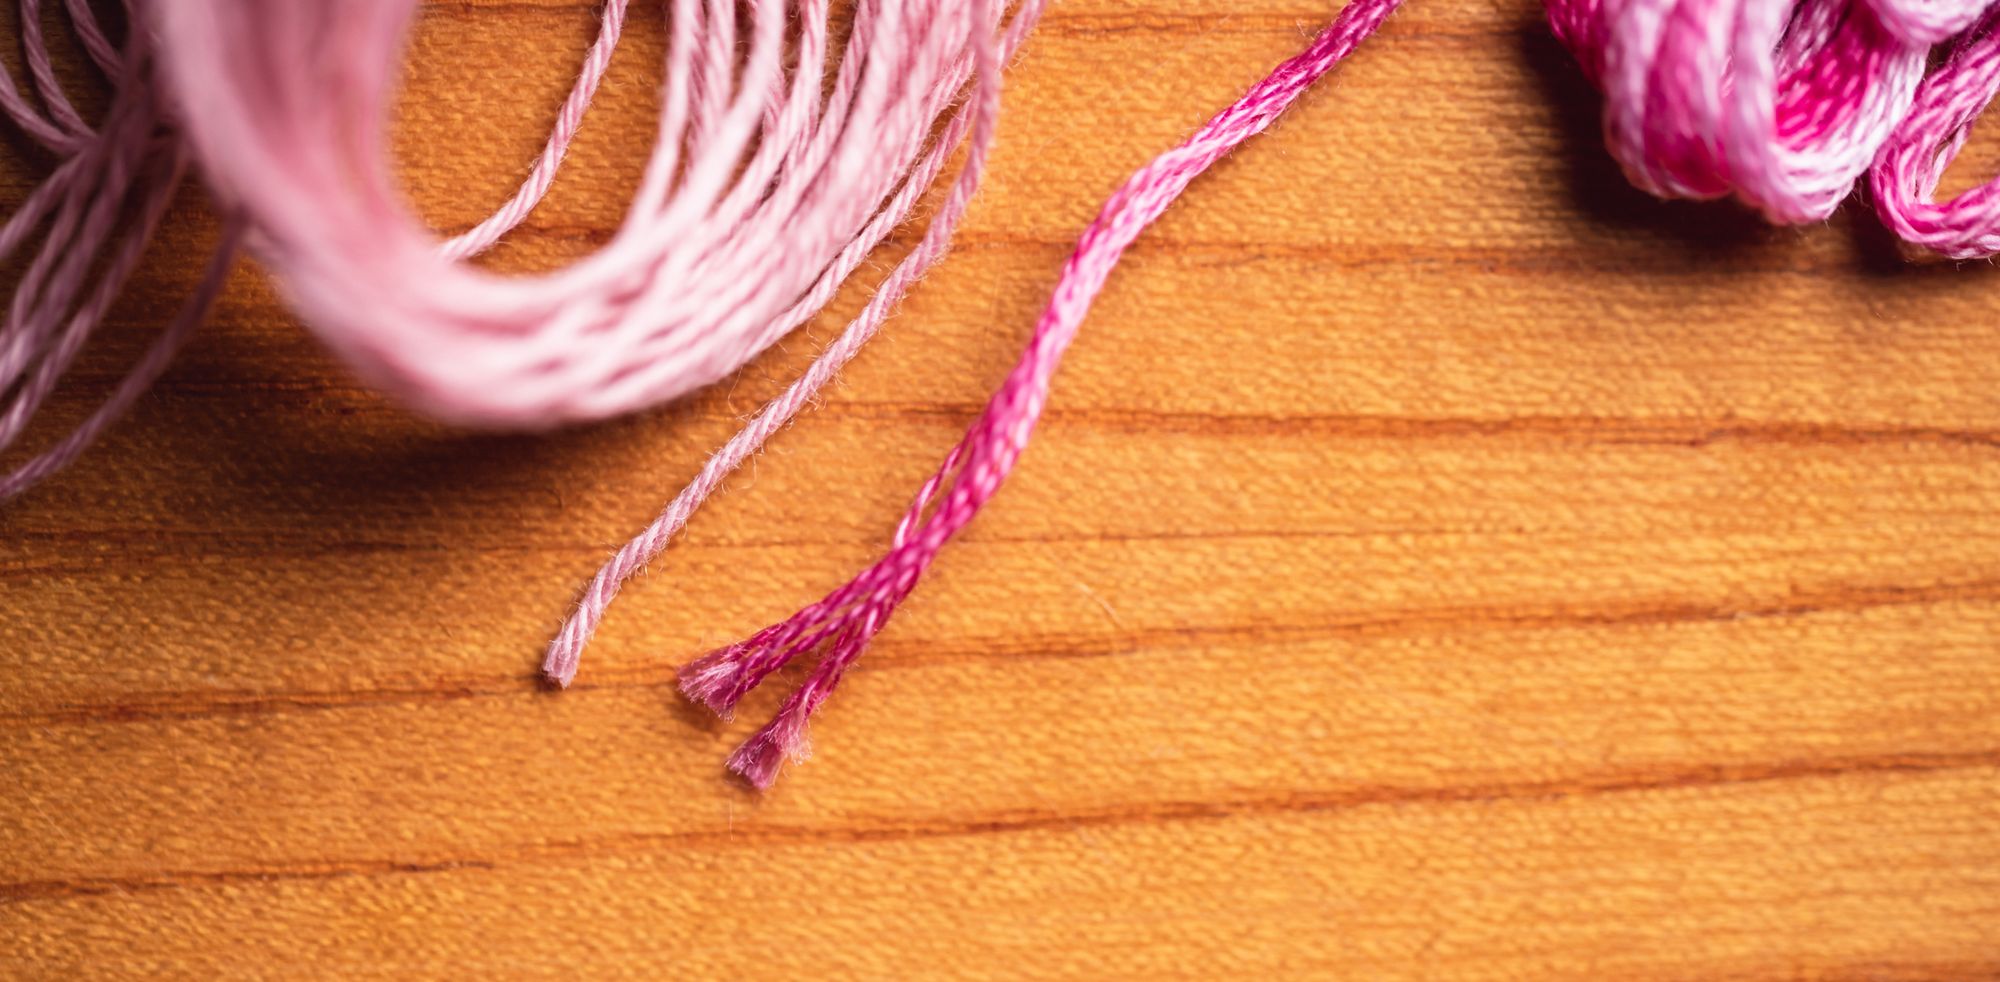 Sashiko thread with no sheen vs. shiny embroidery floss